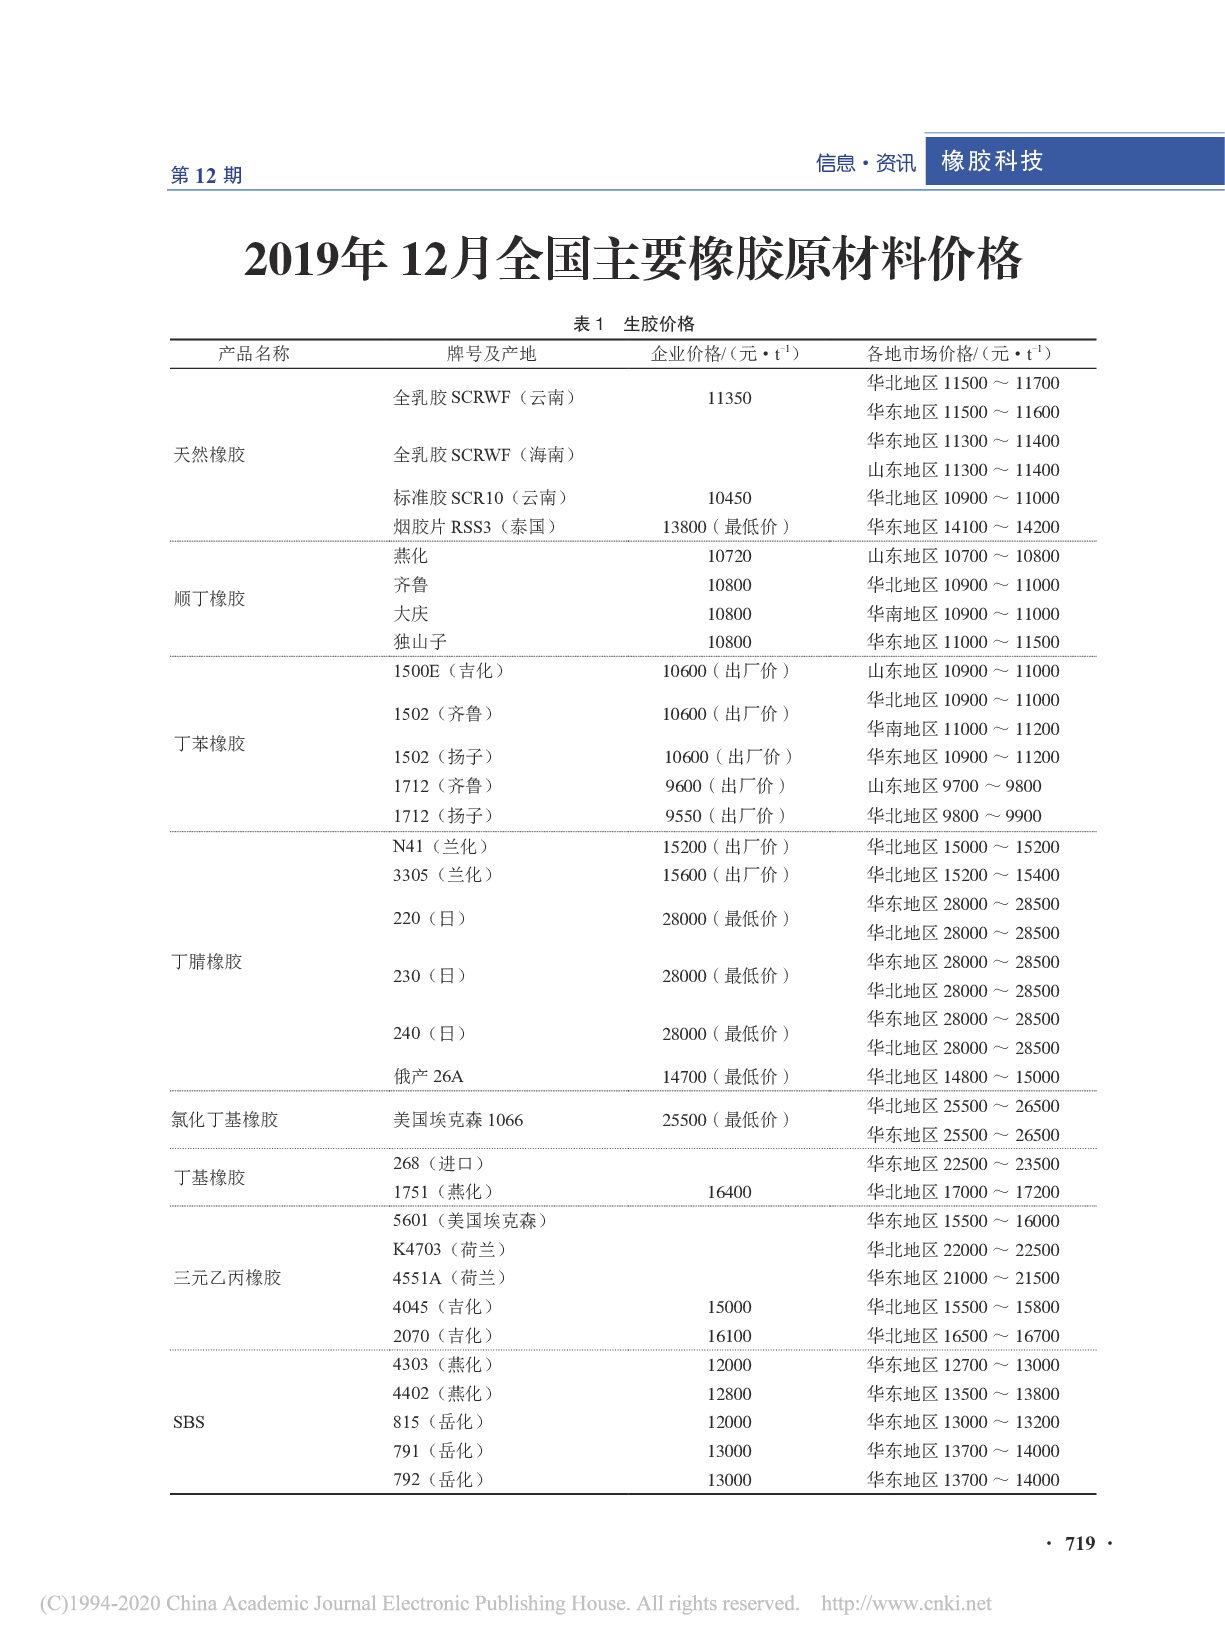 2019年12月全国主要橡胶原材料价格